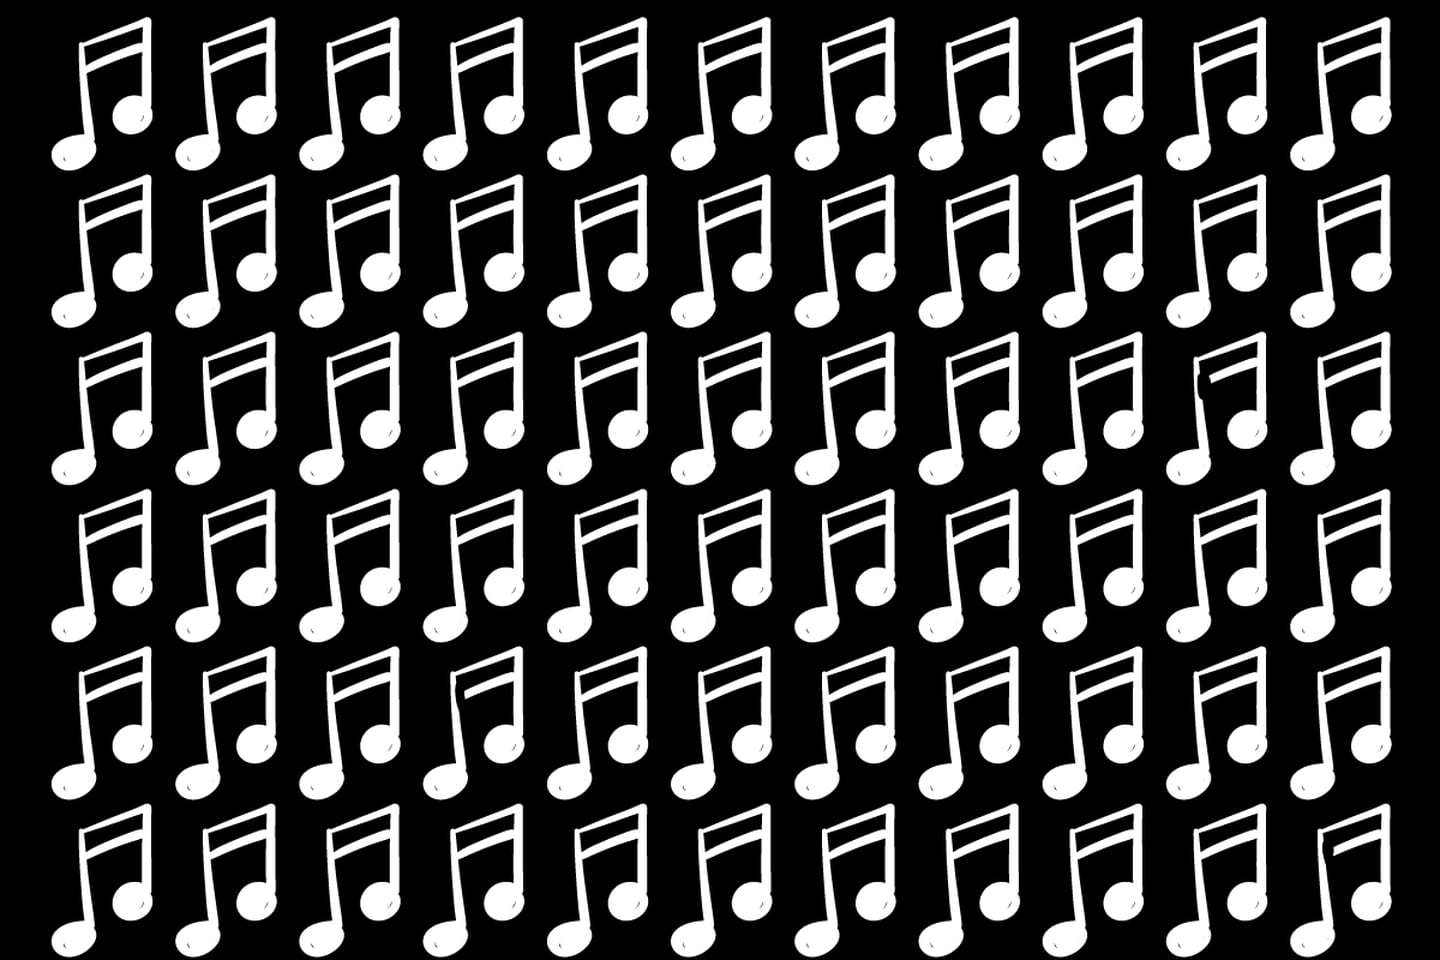 Muchas notas musicales en un fondo negro.